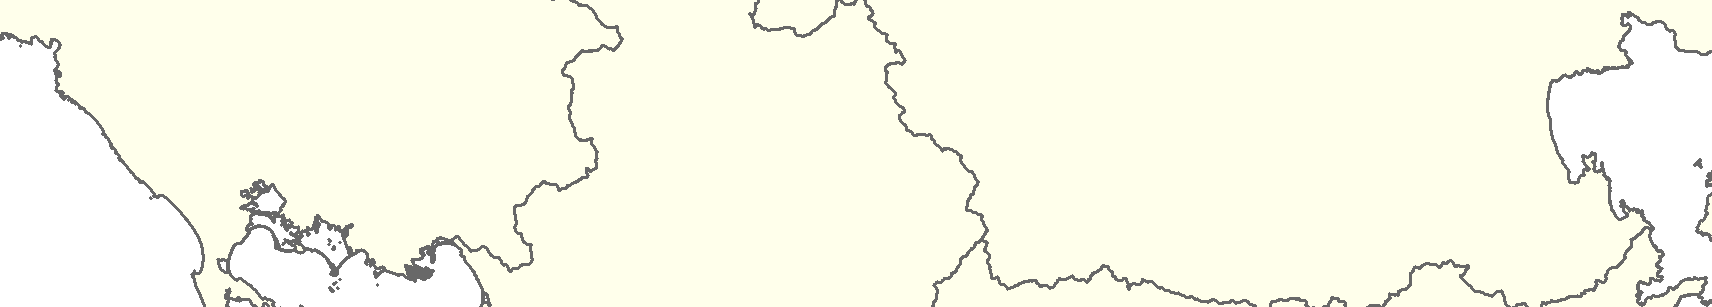 92 Σχήμα 9.1.1 3: Επικαιροποιημένο δίκτυο σταθμών παρακολούθησης επιφανειακών ΥΣ Υπόμνημα Λιμνοθάλασσα Στενών (Λευκάδας) GR0444T0004N υτ.